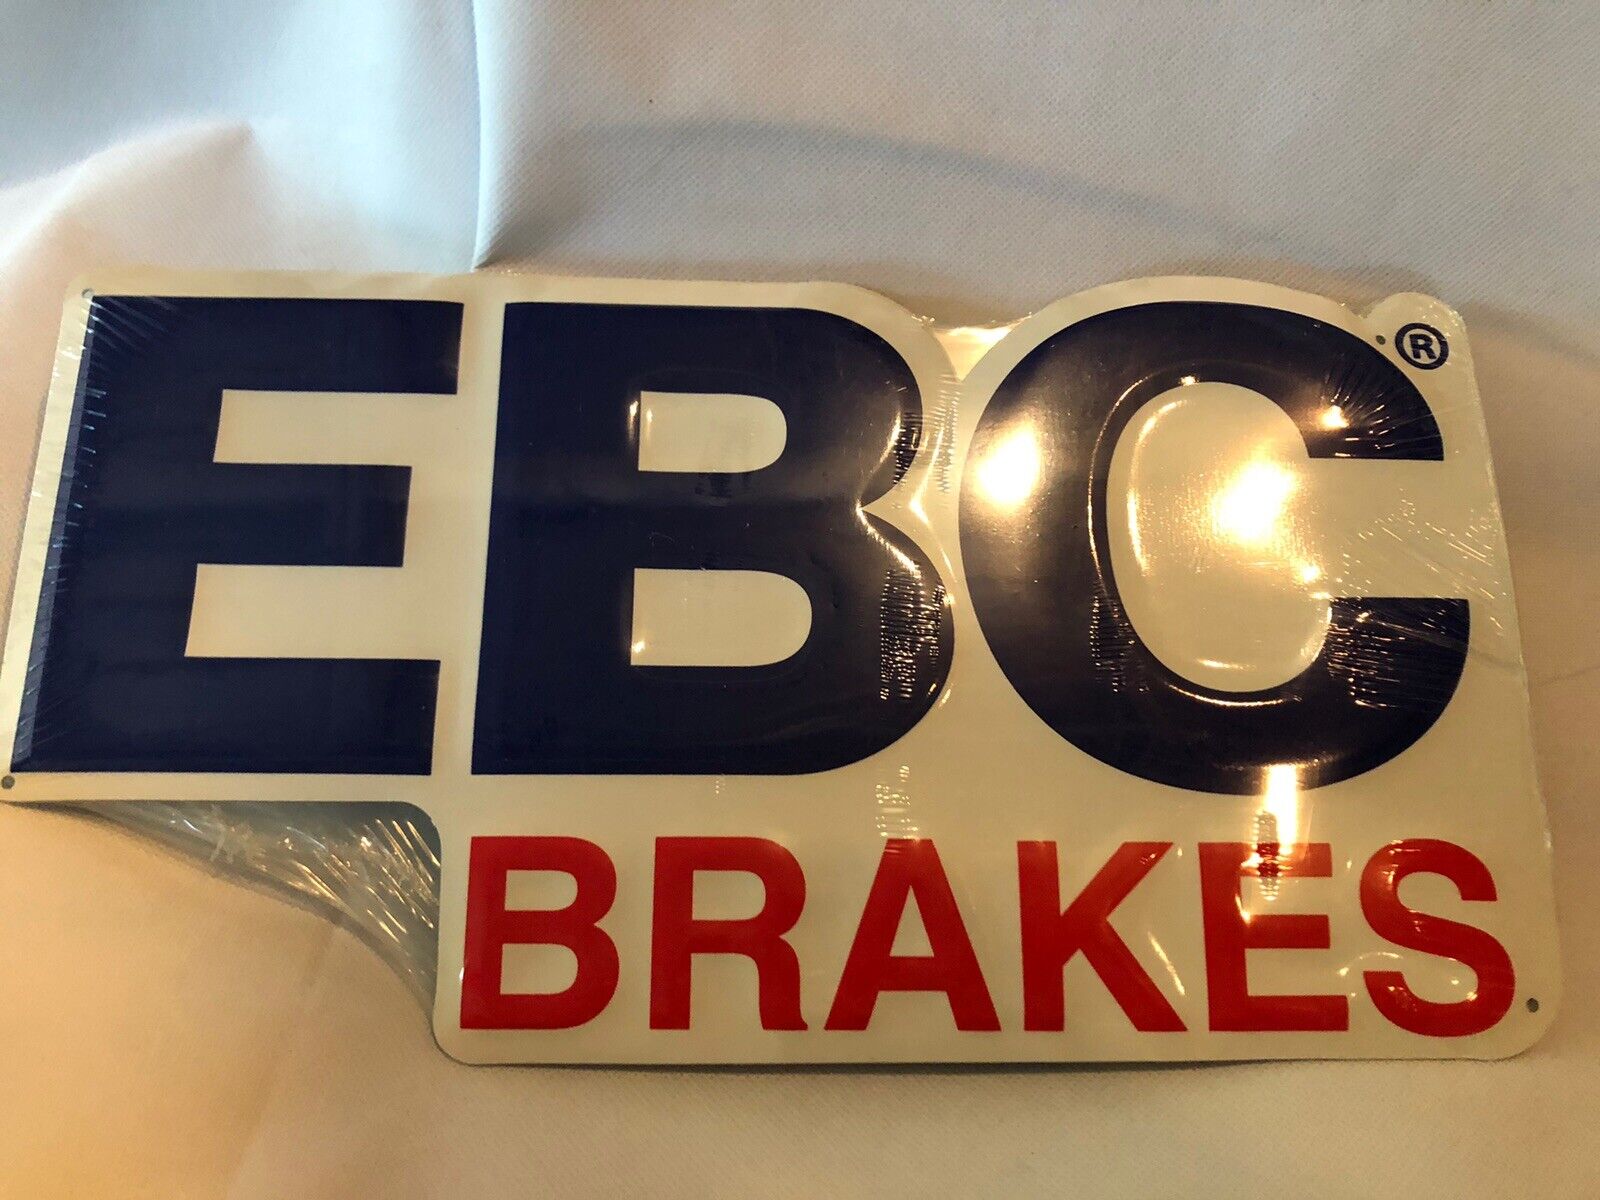 EBC Brakes Advertising Metal Sign *New in Package